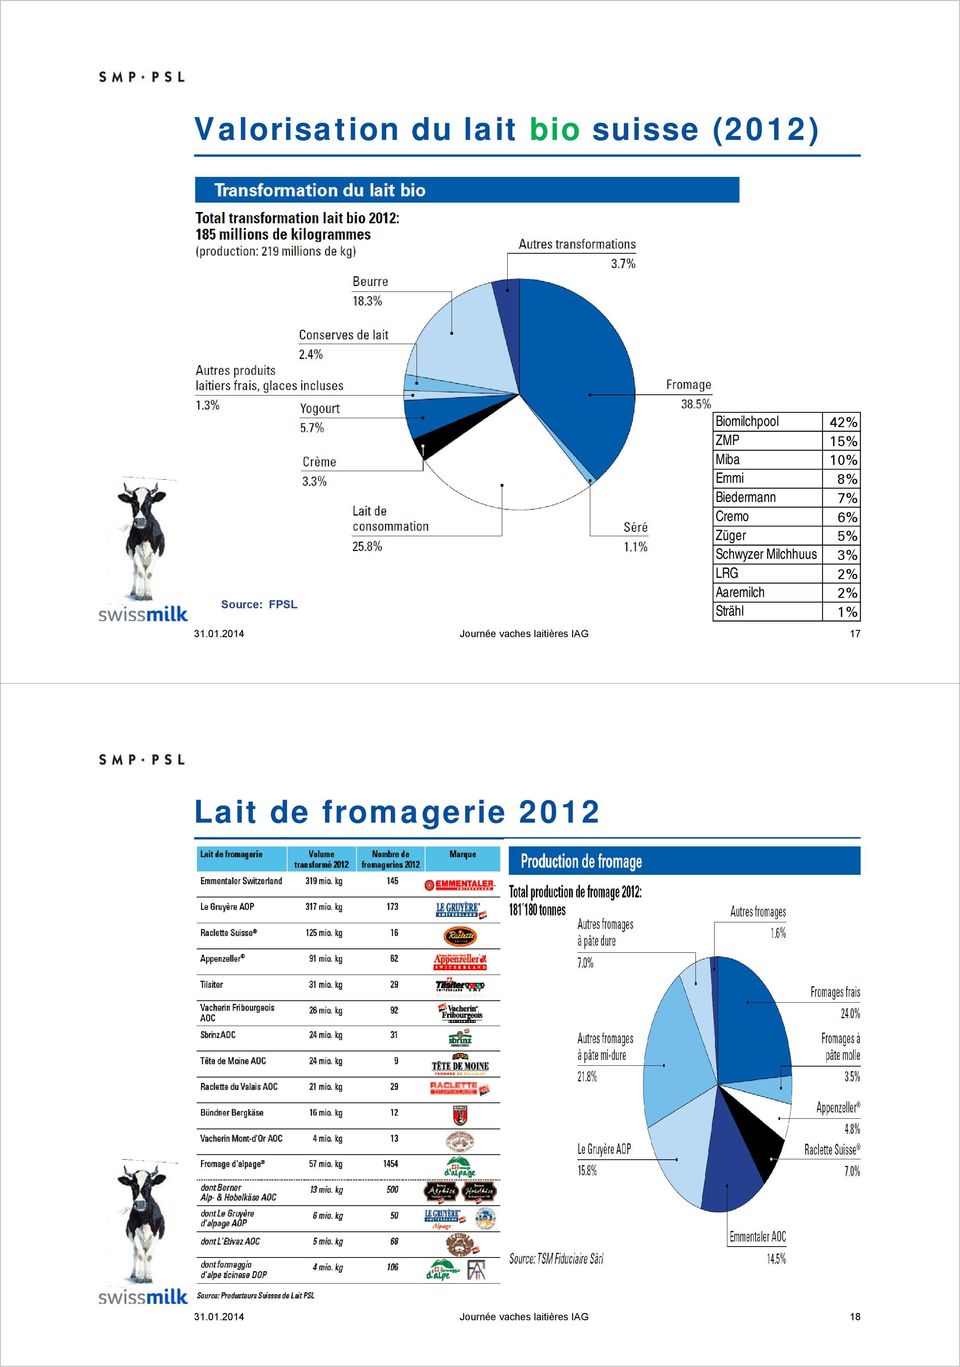 Milchhuus 3% LRG 2% Aaremilch 2% Strähl 1% 31.01.